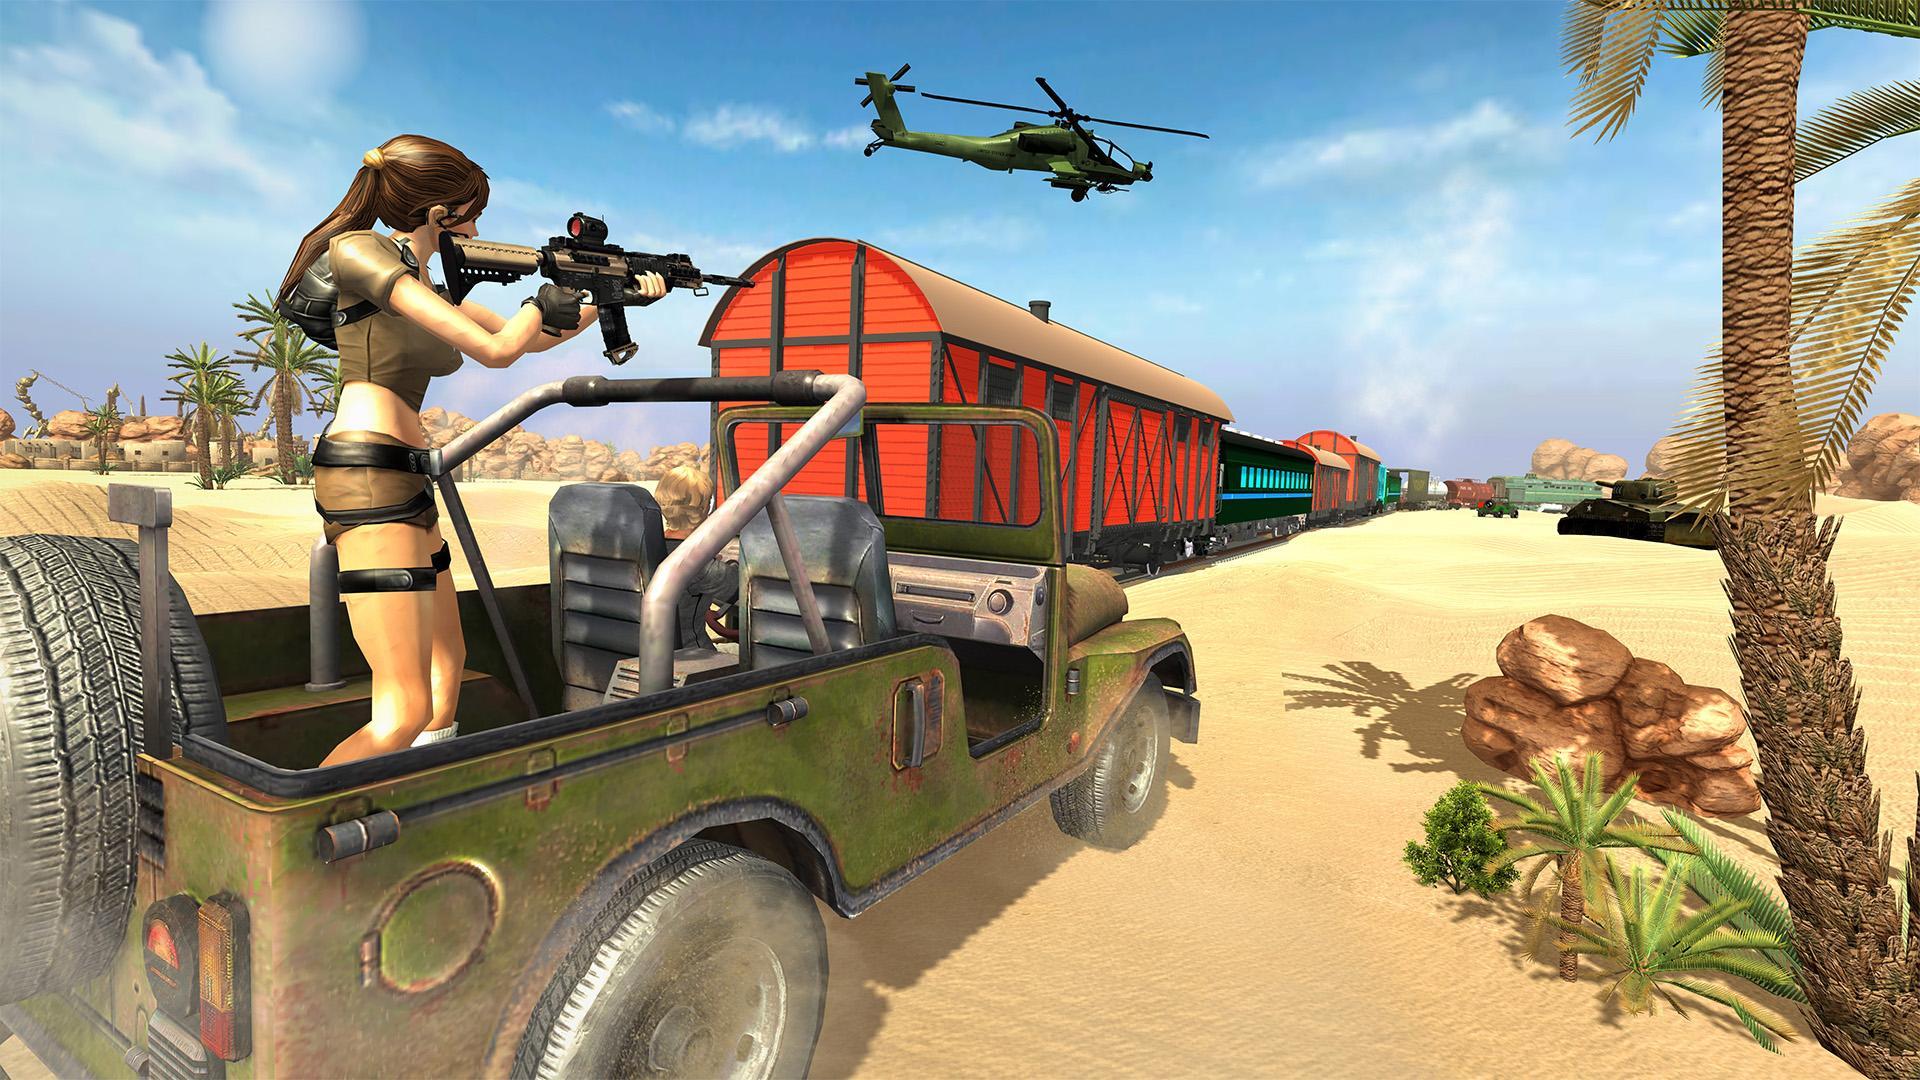 Screenshot 1 of Đặc vụ bí mật: Trò chơi bắn súng 3D bắn tỉa 2019 1.47